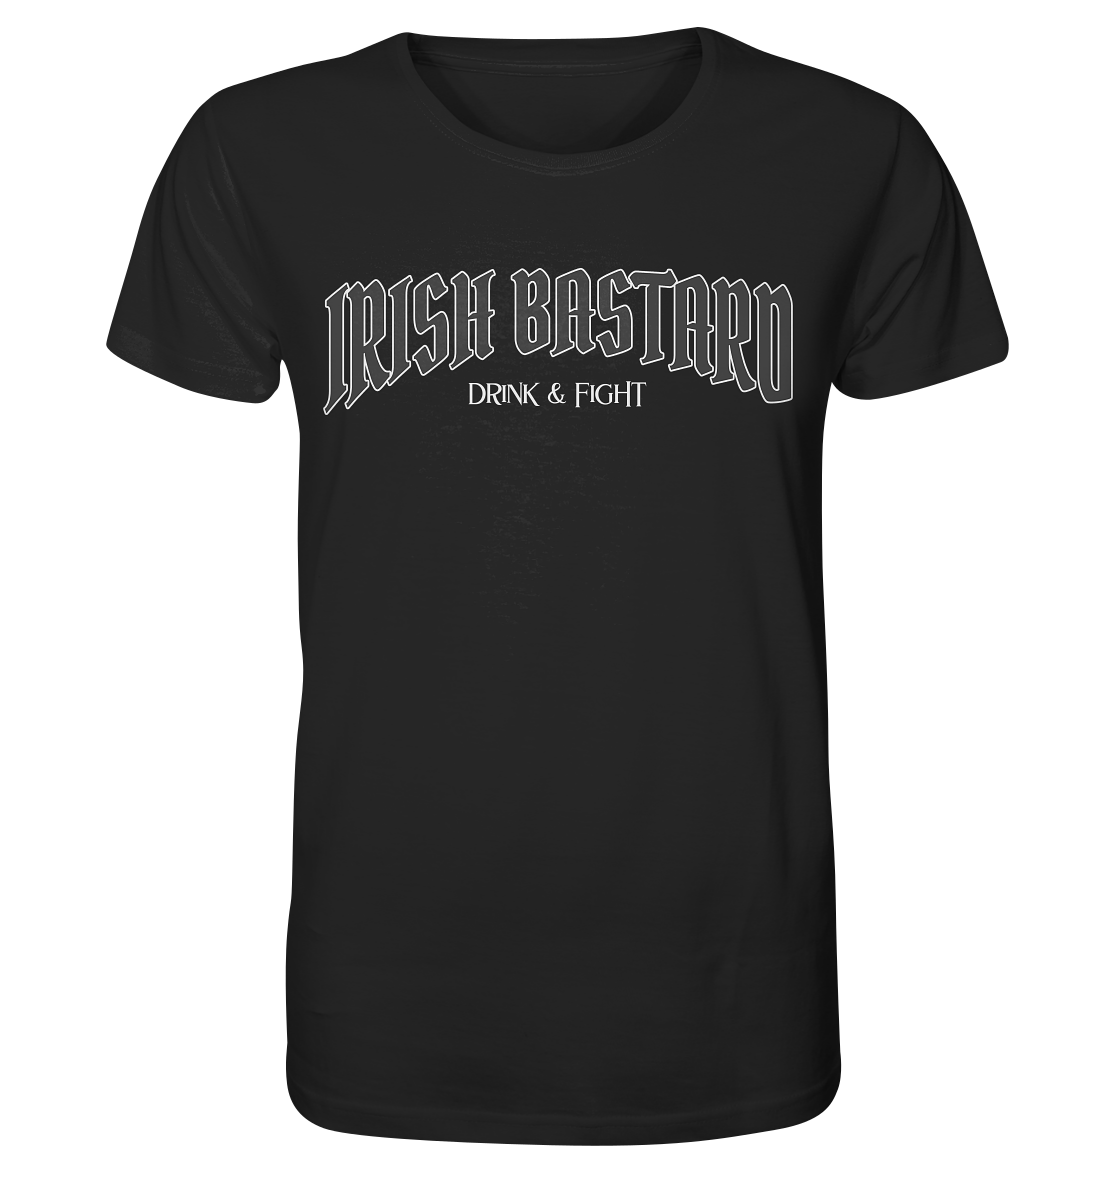 Irish Bastard "Drink & Fight" - Organic Shirt